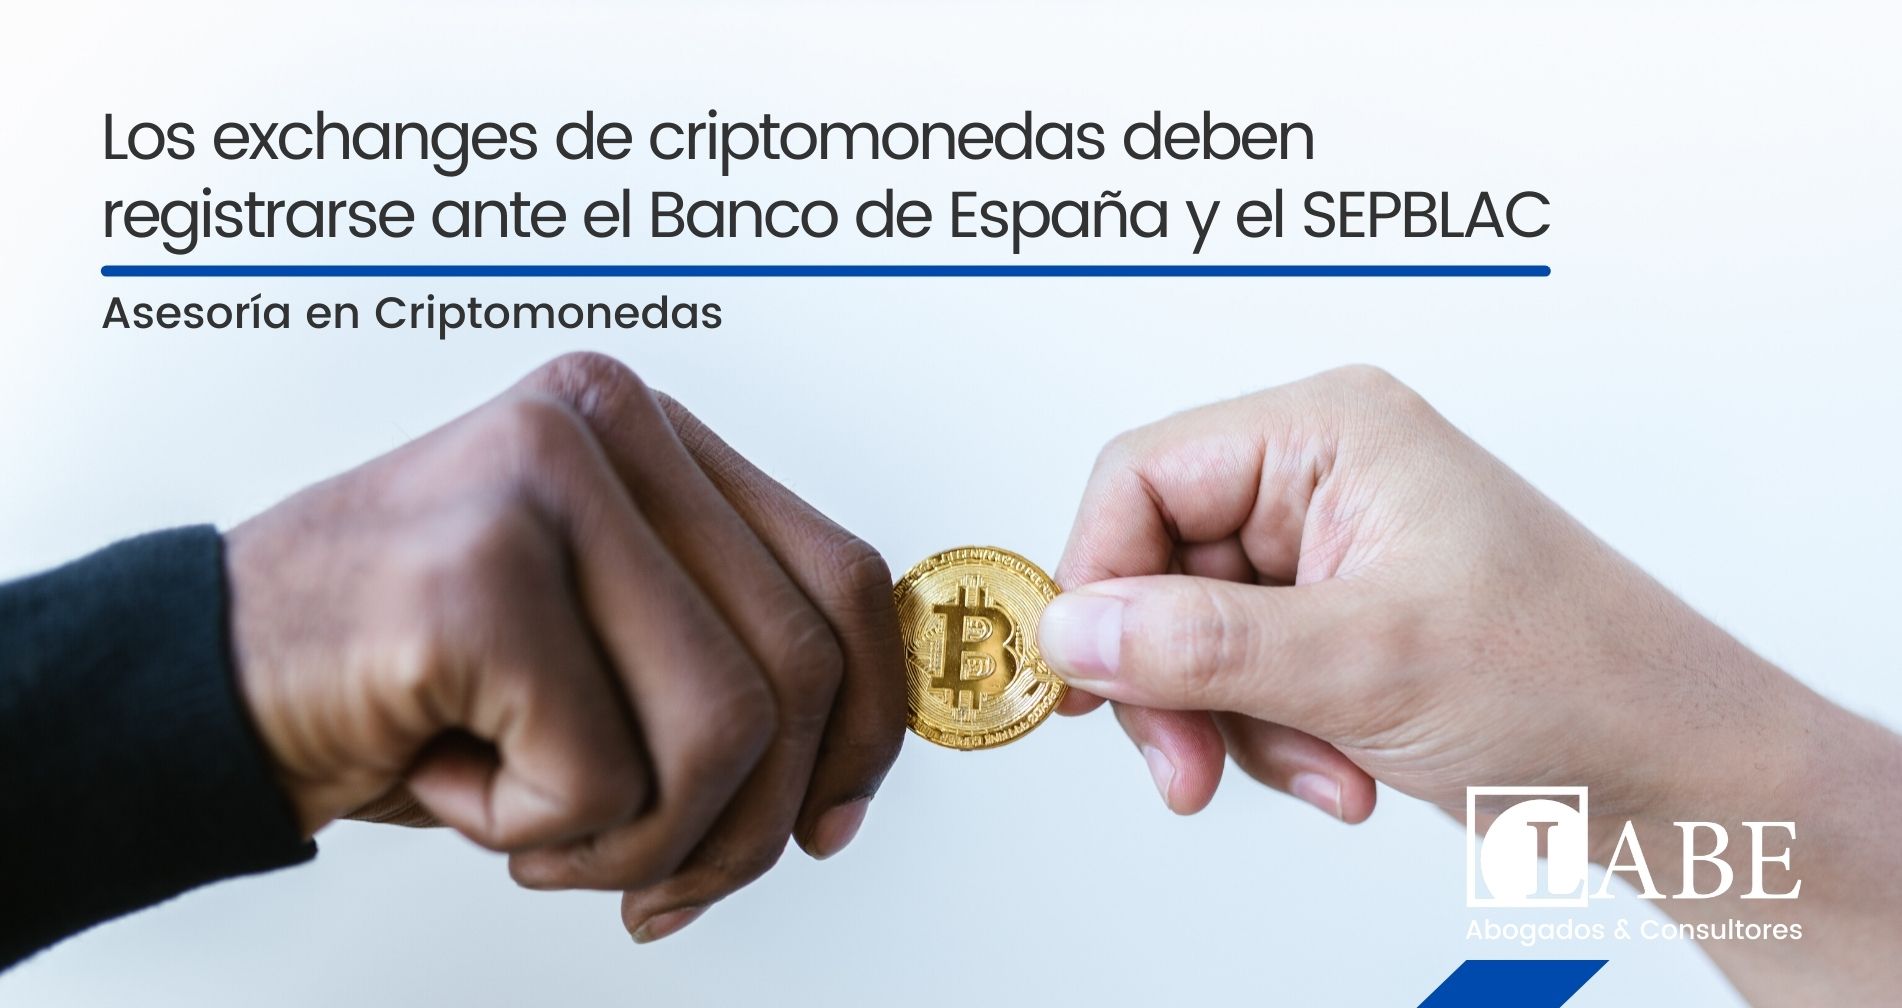 Los exchanges de criptomonedas deben registrarse ante el Banco de España y el SEPBLAC